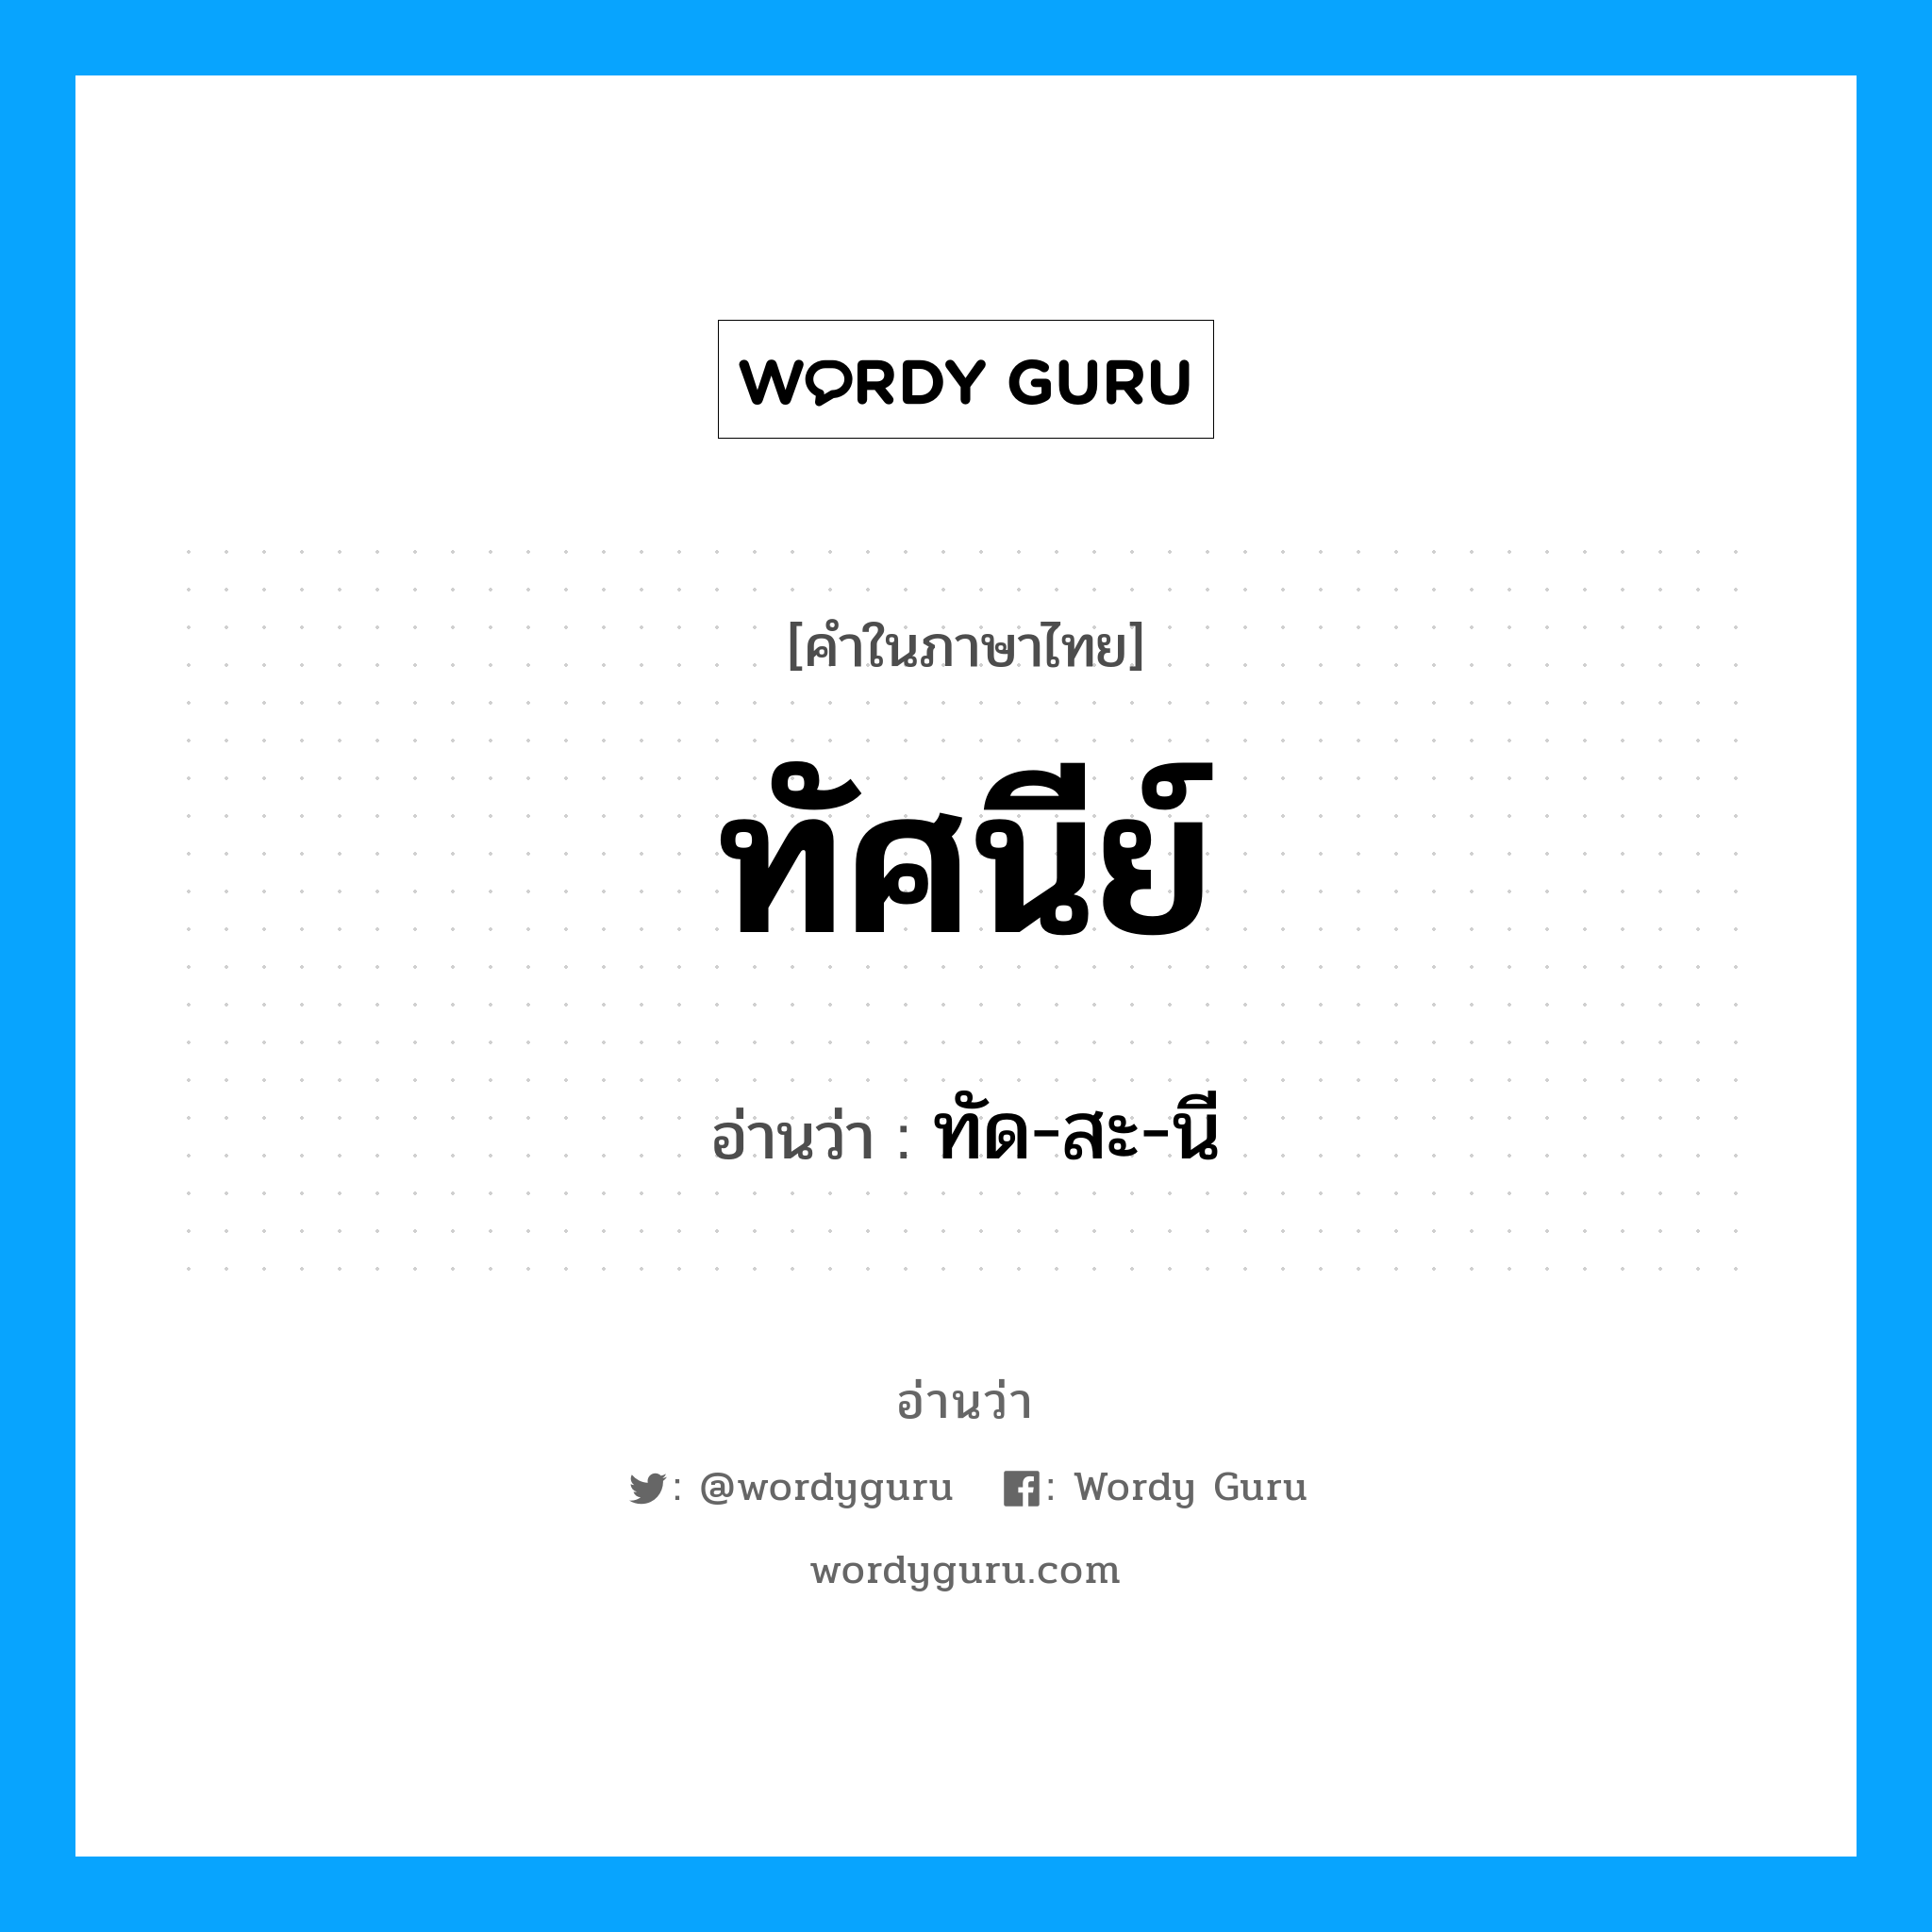 ทัด-สะ-นี เป็นคำอ่านของคำไหน?, คำในภาษาไทย ทัด-สะ-นี อ่านว่า ทัศนีย์